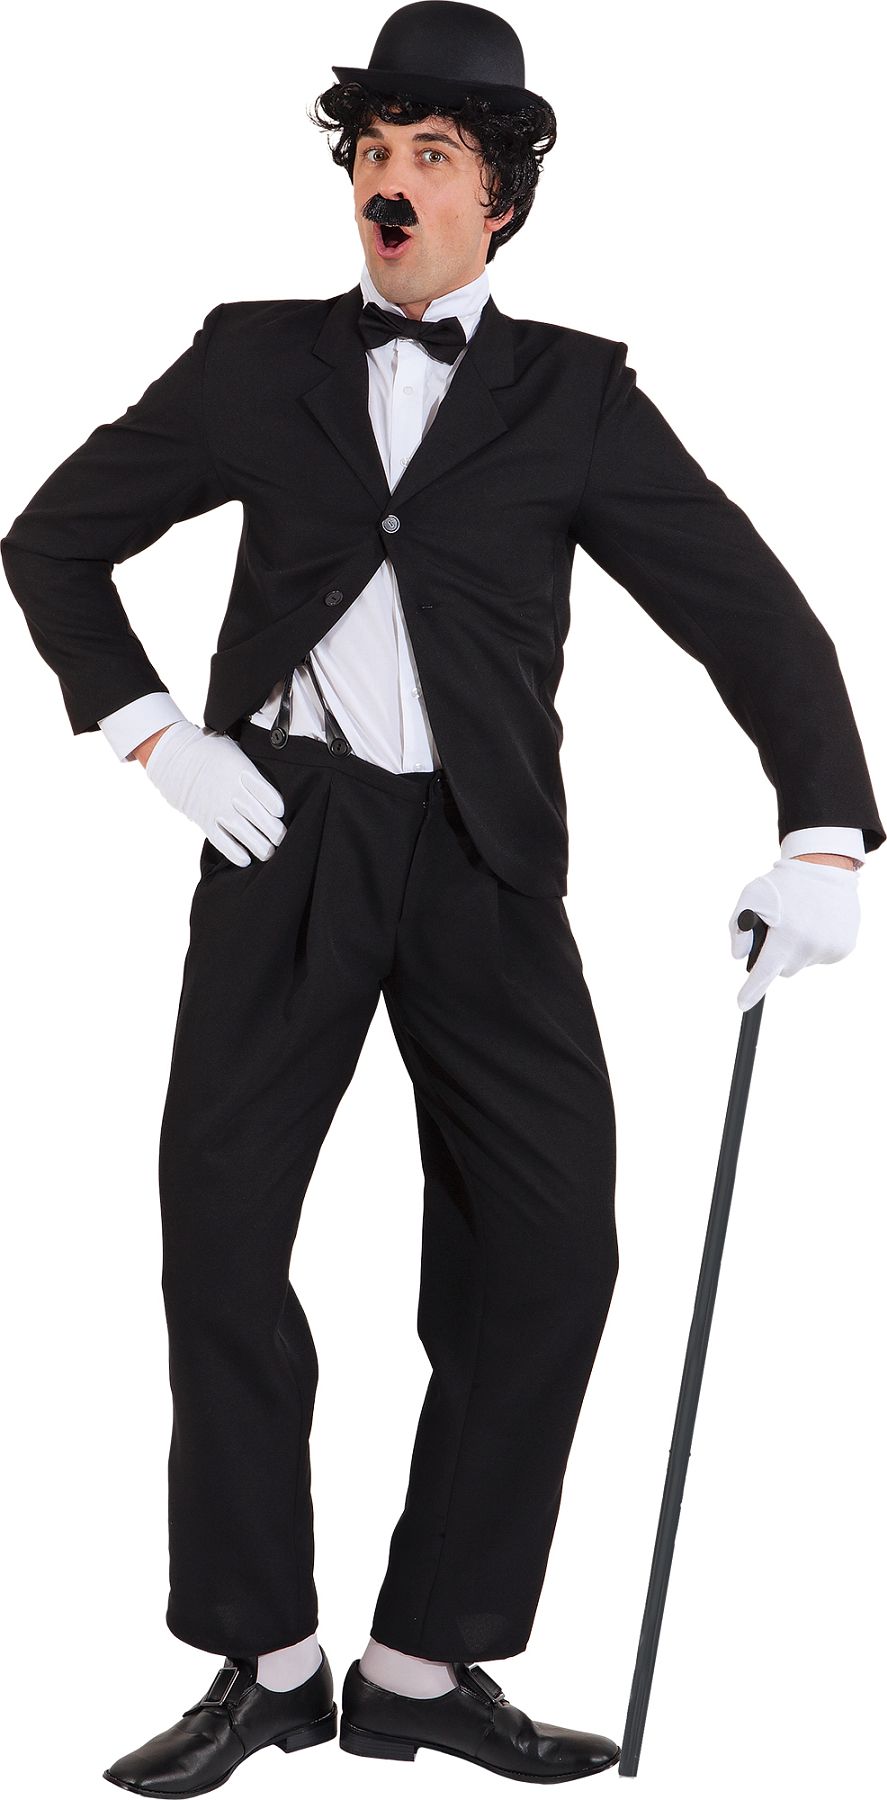 Comedian suit, black